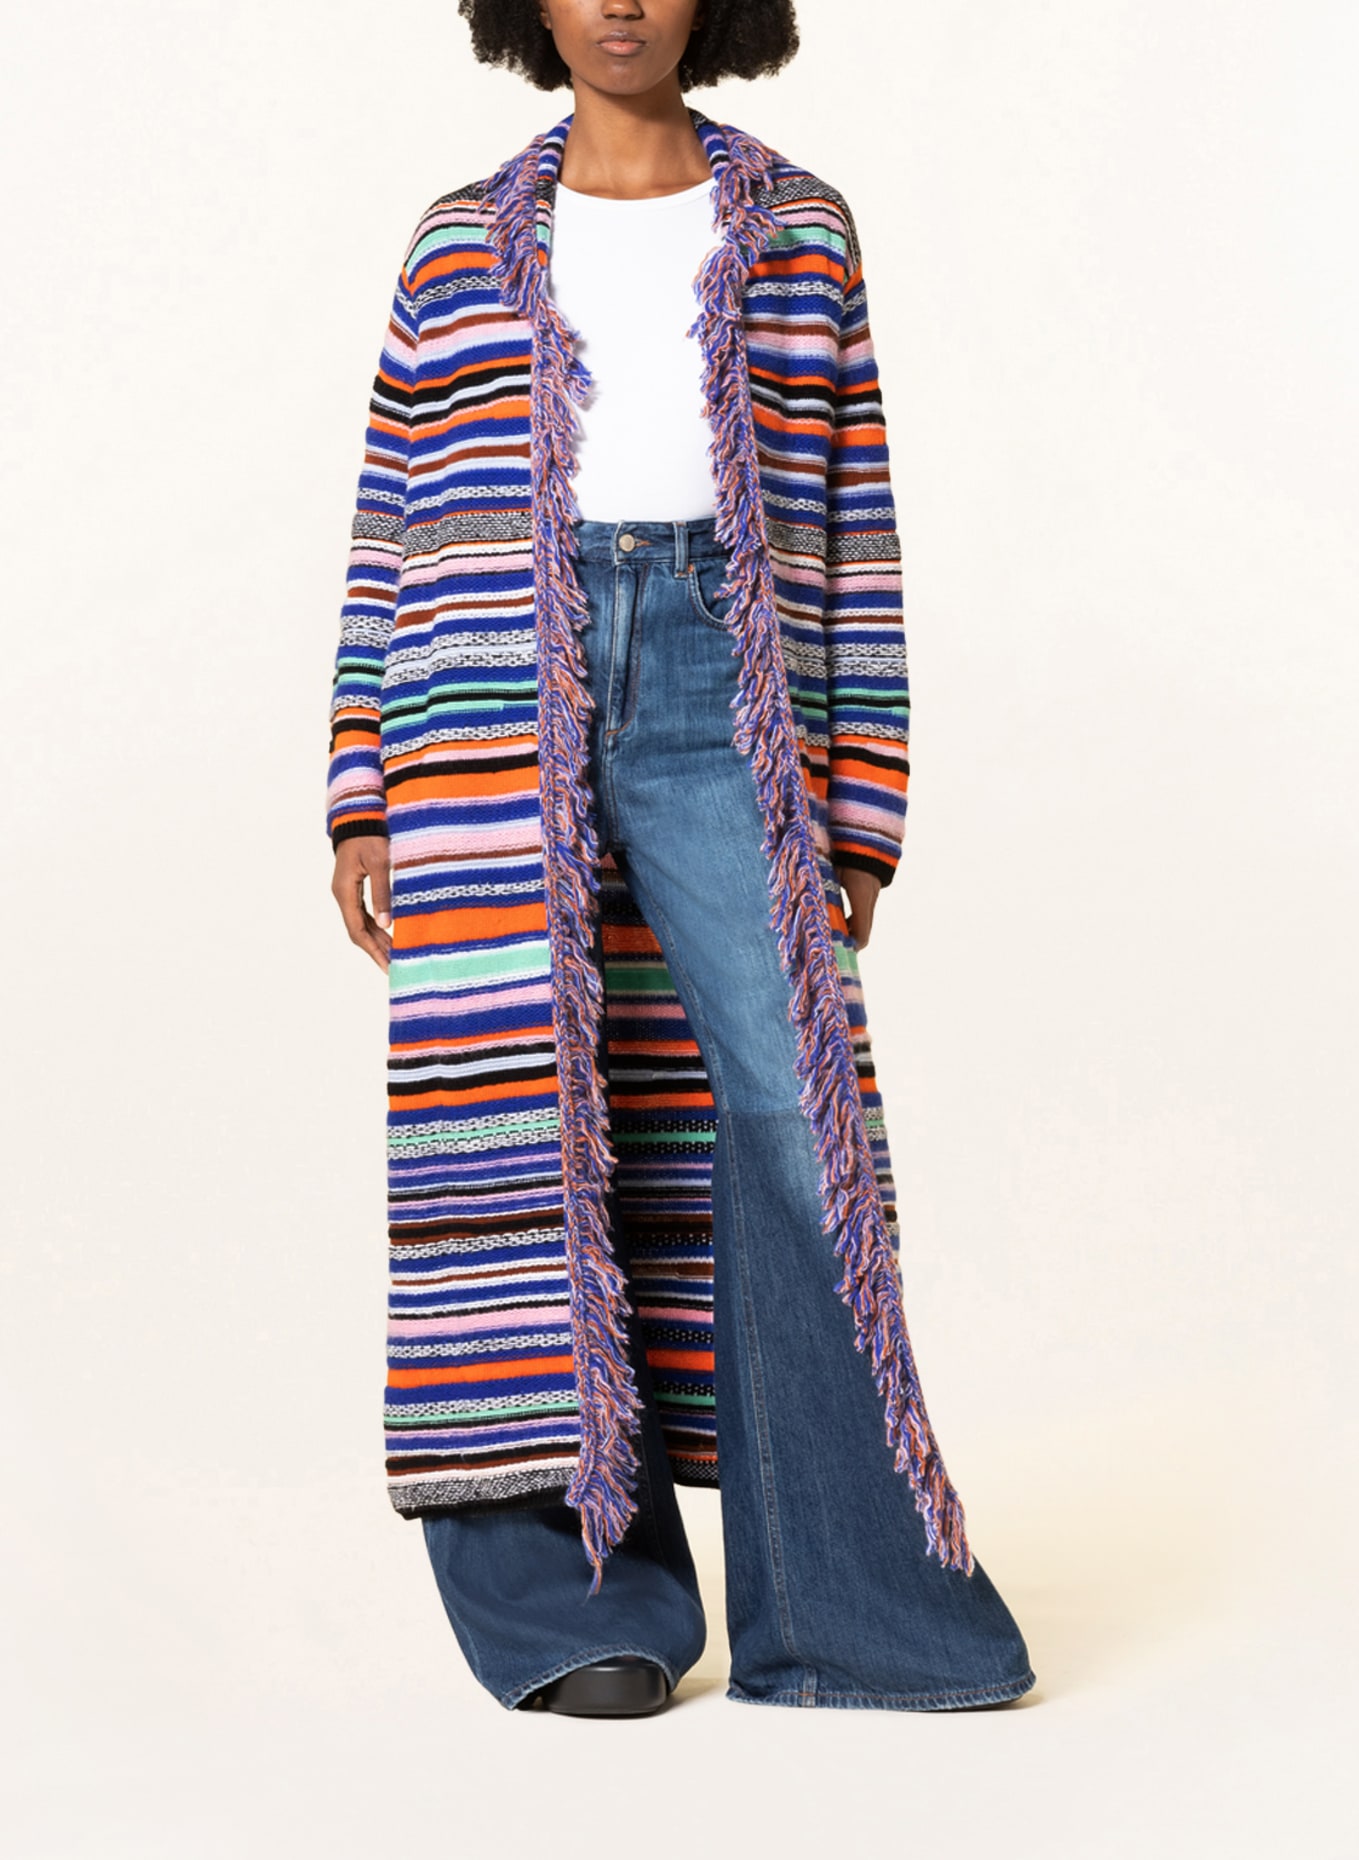 DOROTHEE SCHUMACHER Knit cardigan, Color: BLUE/ ORANGE (Image 2)